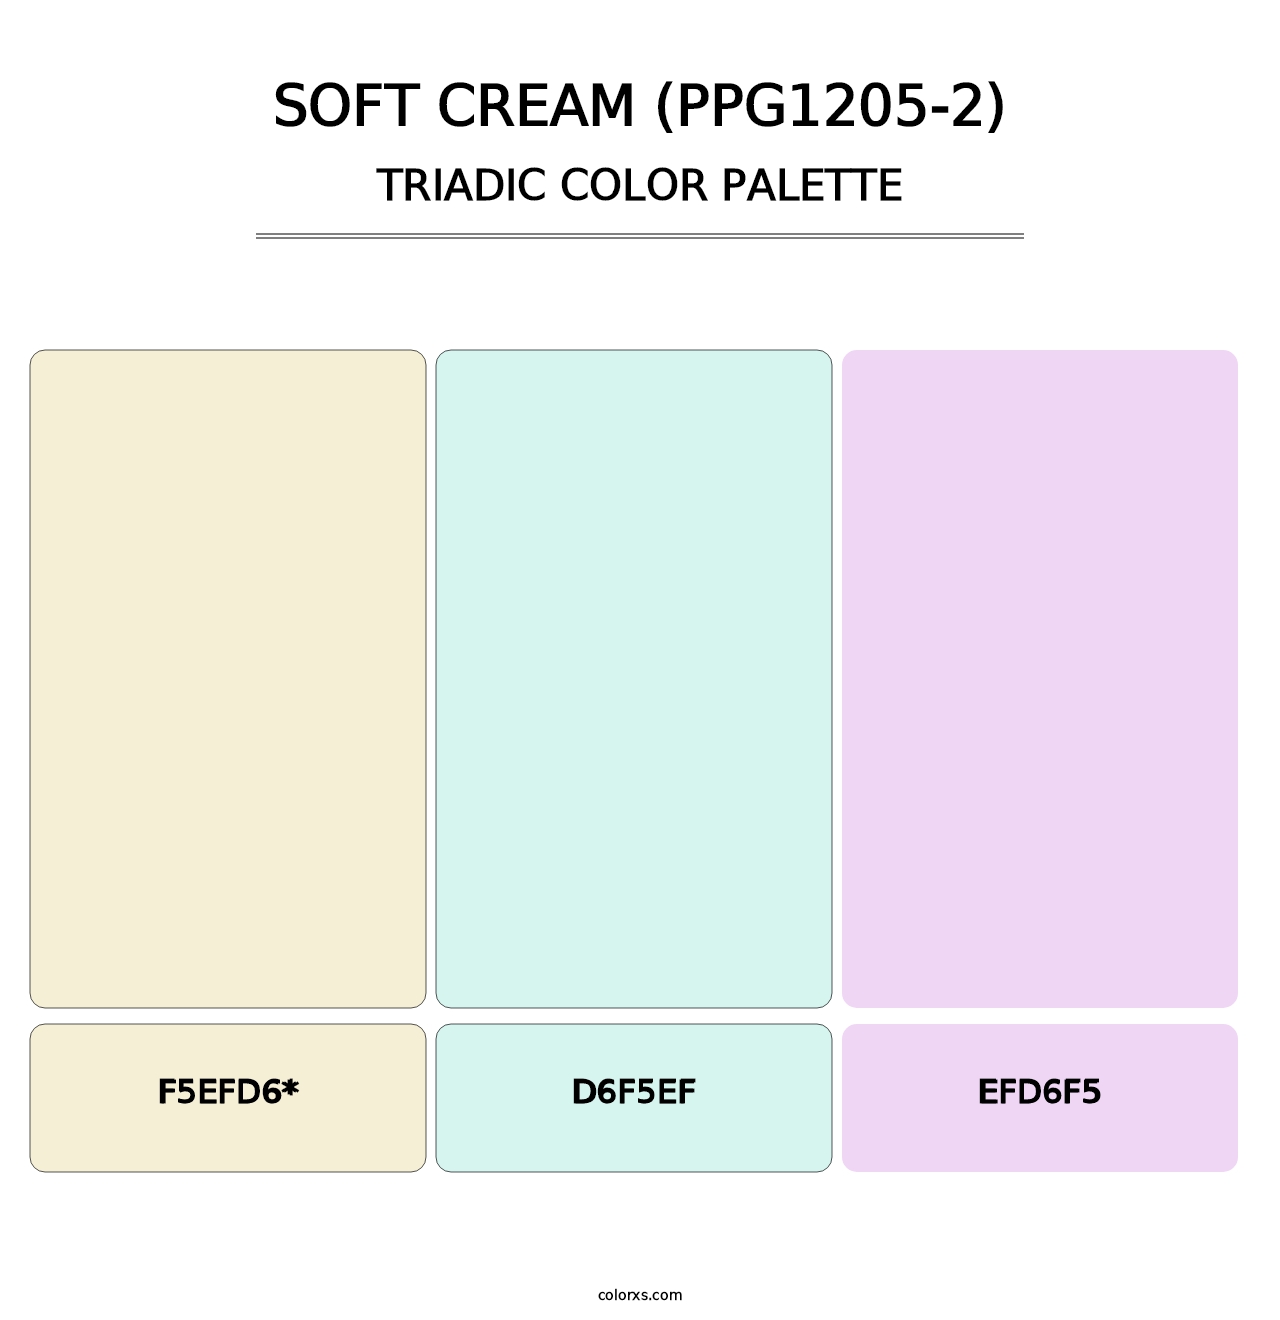 Soft Cream (PPG1205-2) - Triadic Color Palette